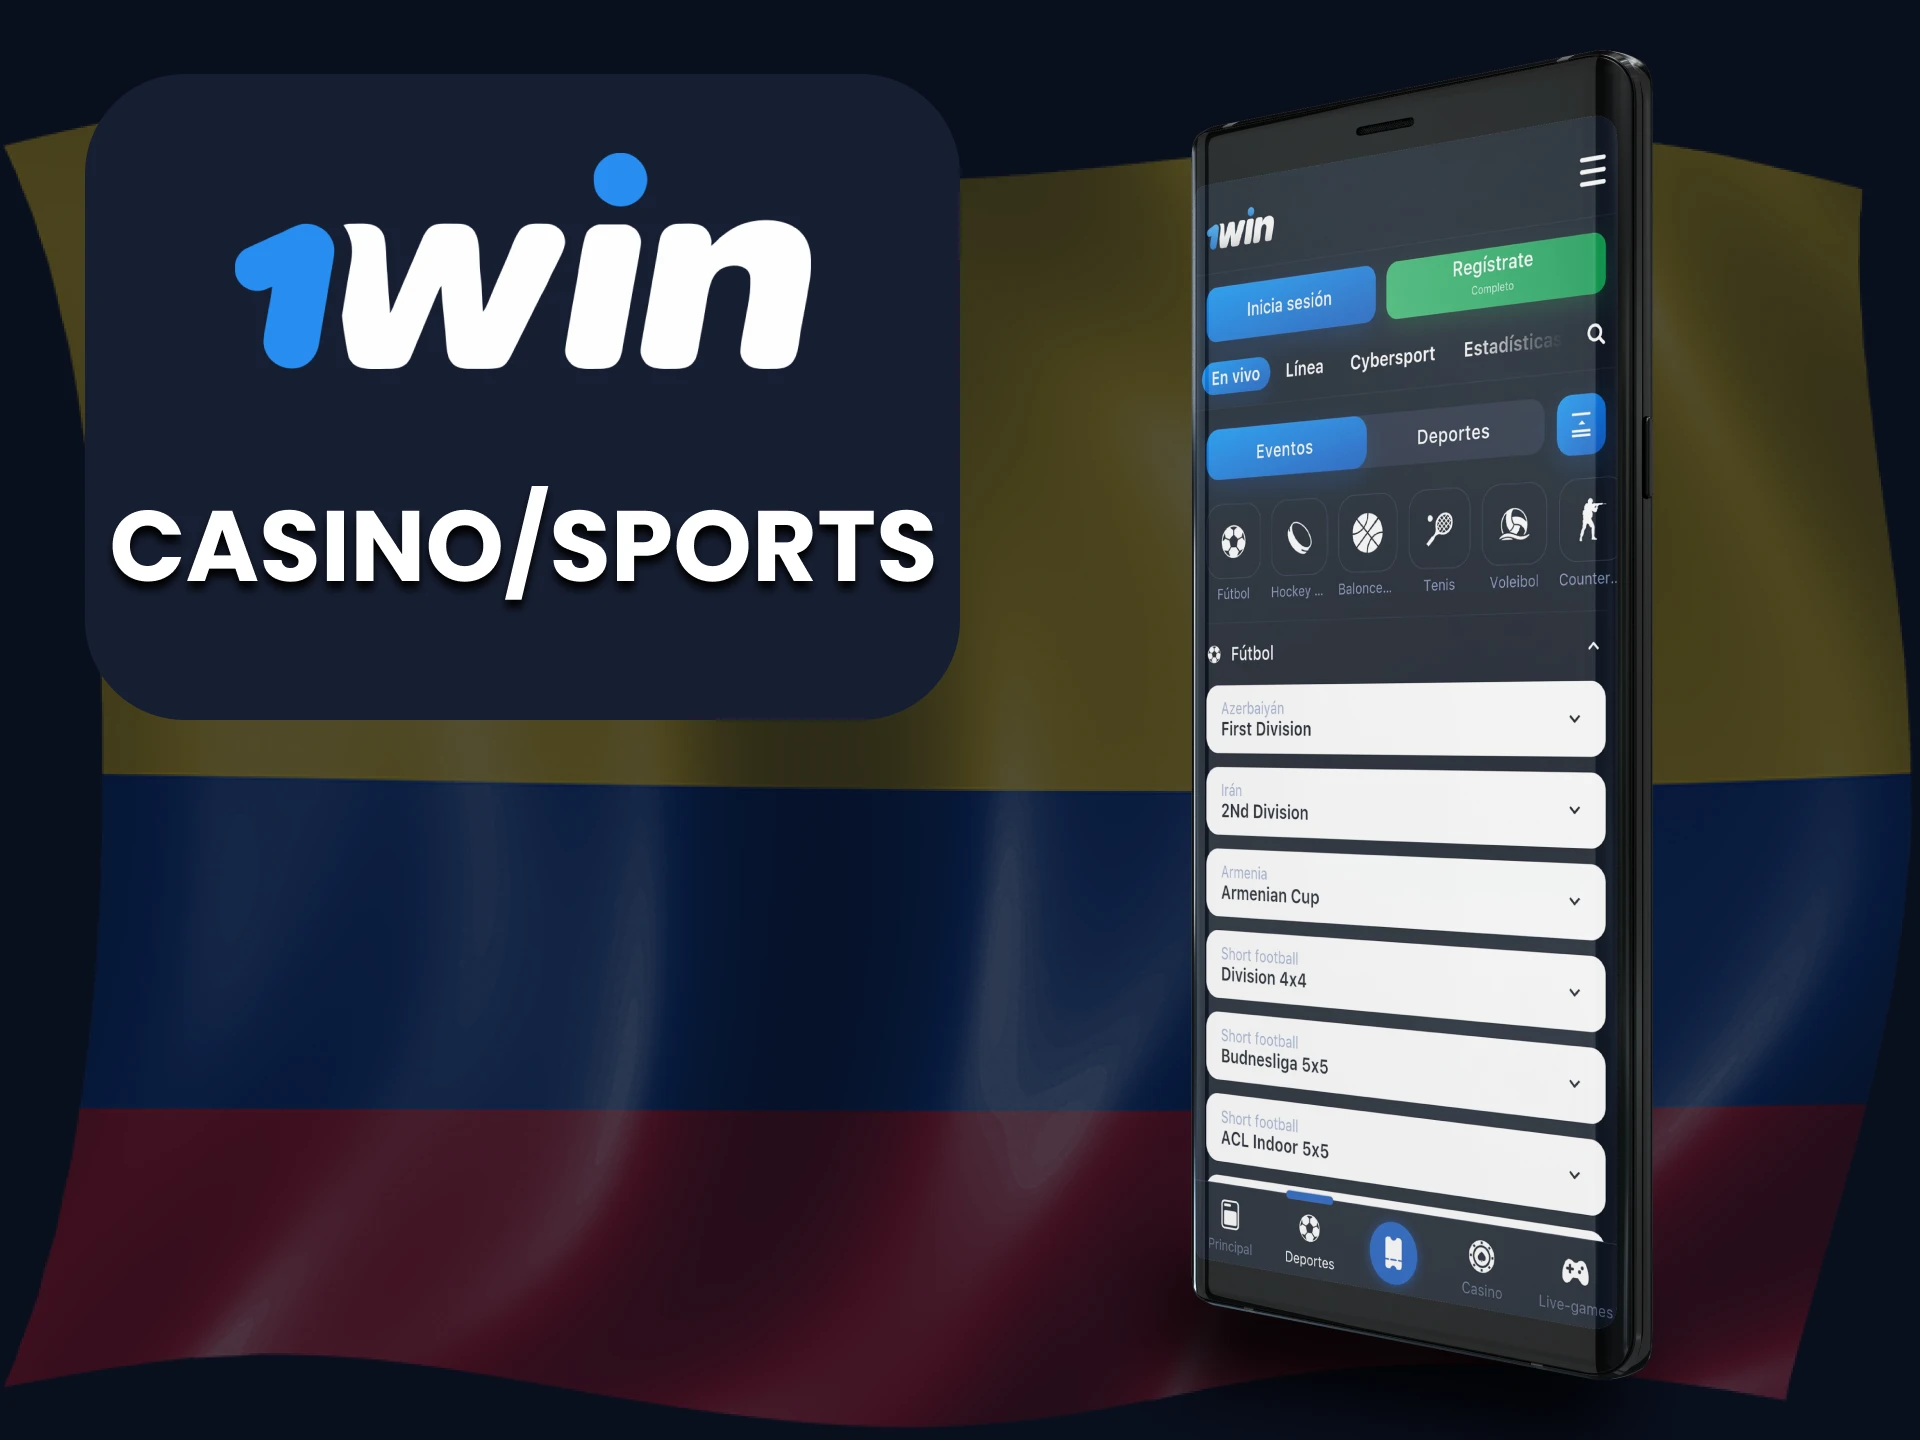 Puede realizar apuestas deportivas y jugar en el casino utilizando la aplicación 1win.